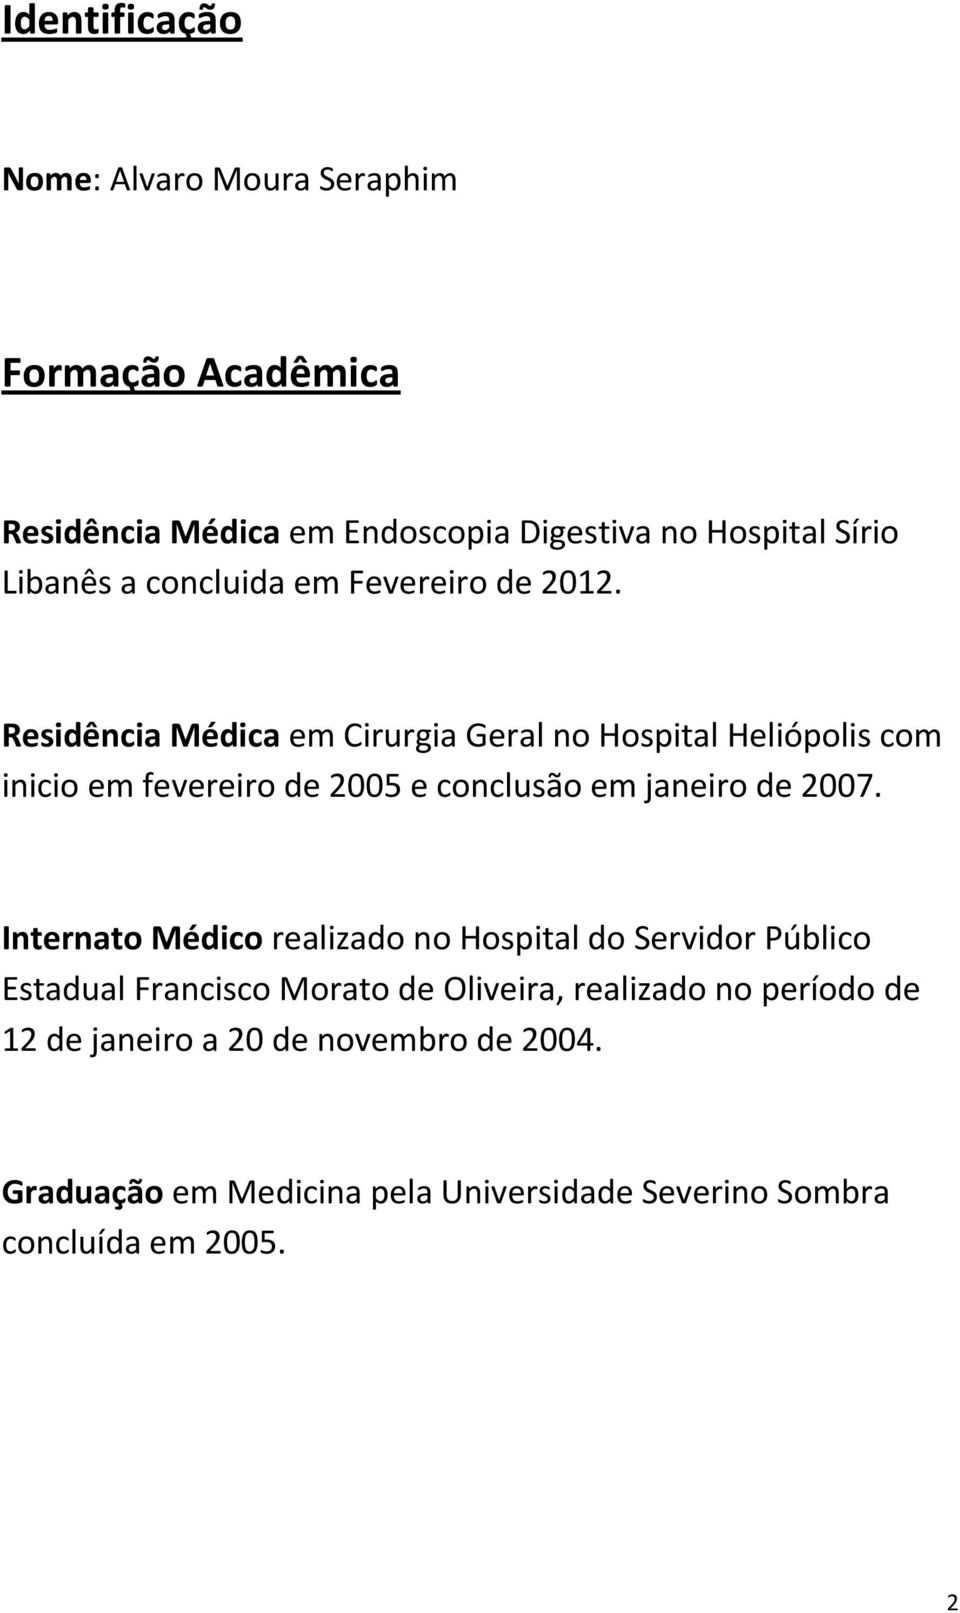 Residência Médica em Cirurgia Geral no Hospital Heliópolis com inicio em fevereiro de 2005 e conclusão em janeiro de 2007.